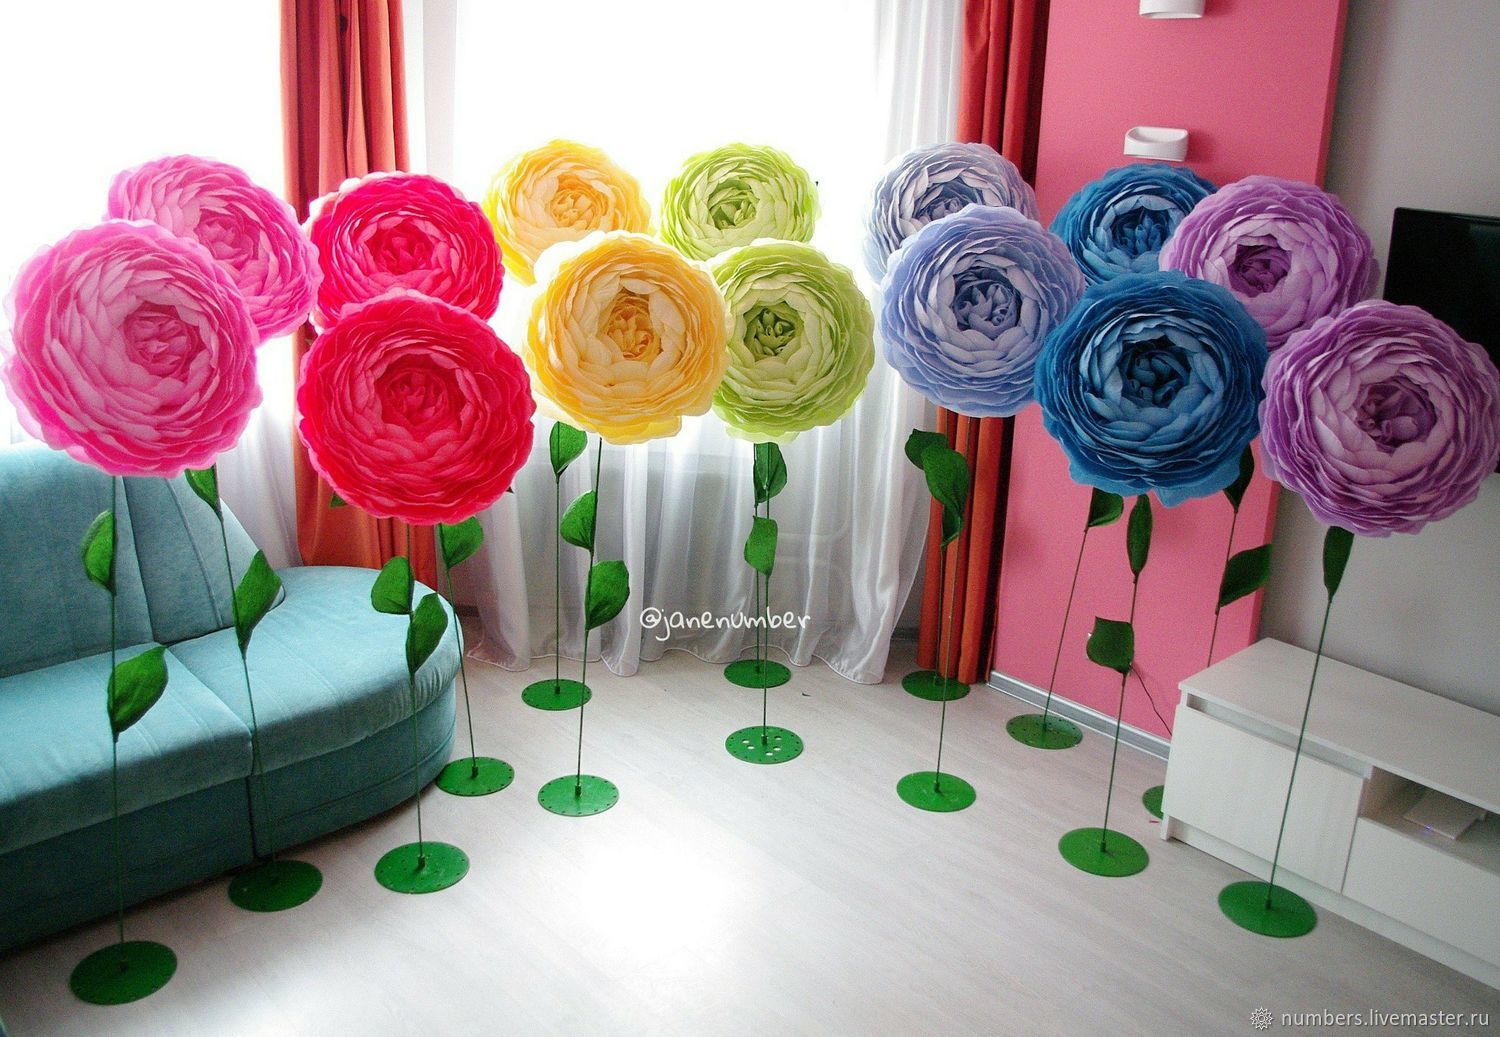 оформление зала цветами из гофрированной бумаги